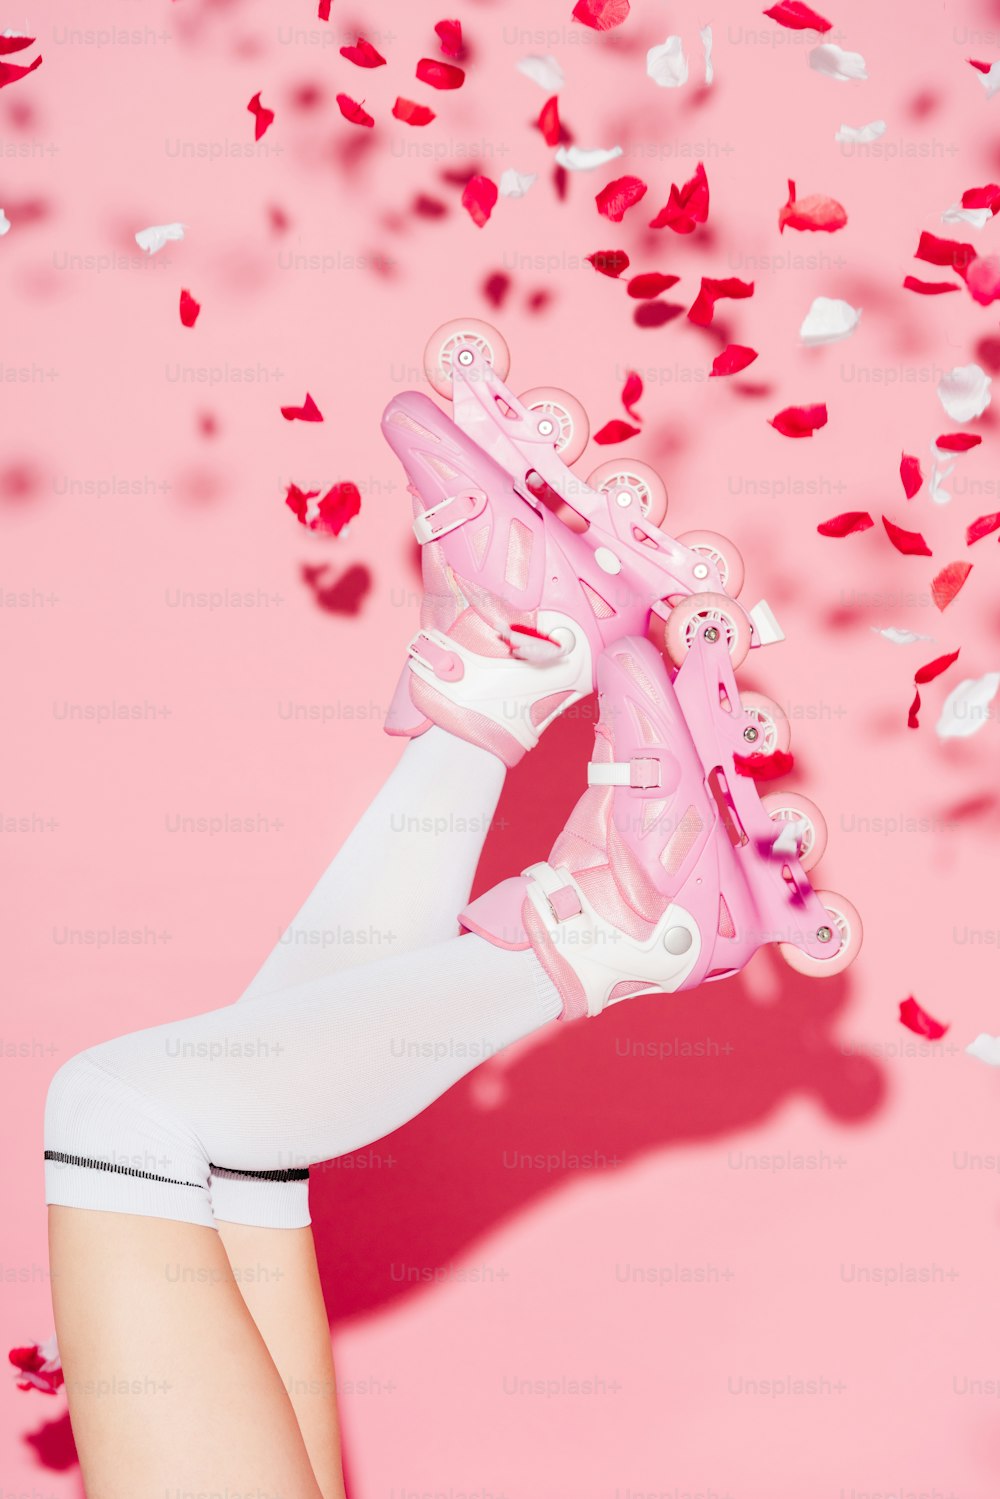 ピンクの背景にバラの花びらの近くに長い靴下とローラースケートを履いた女の子のトリミングされたビュー